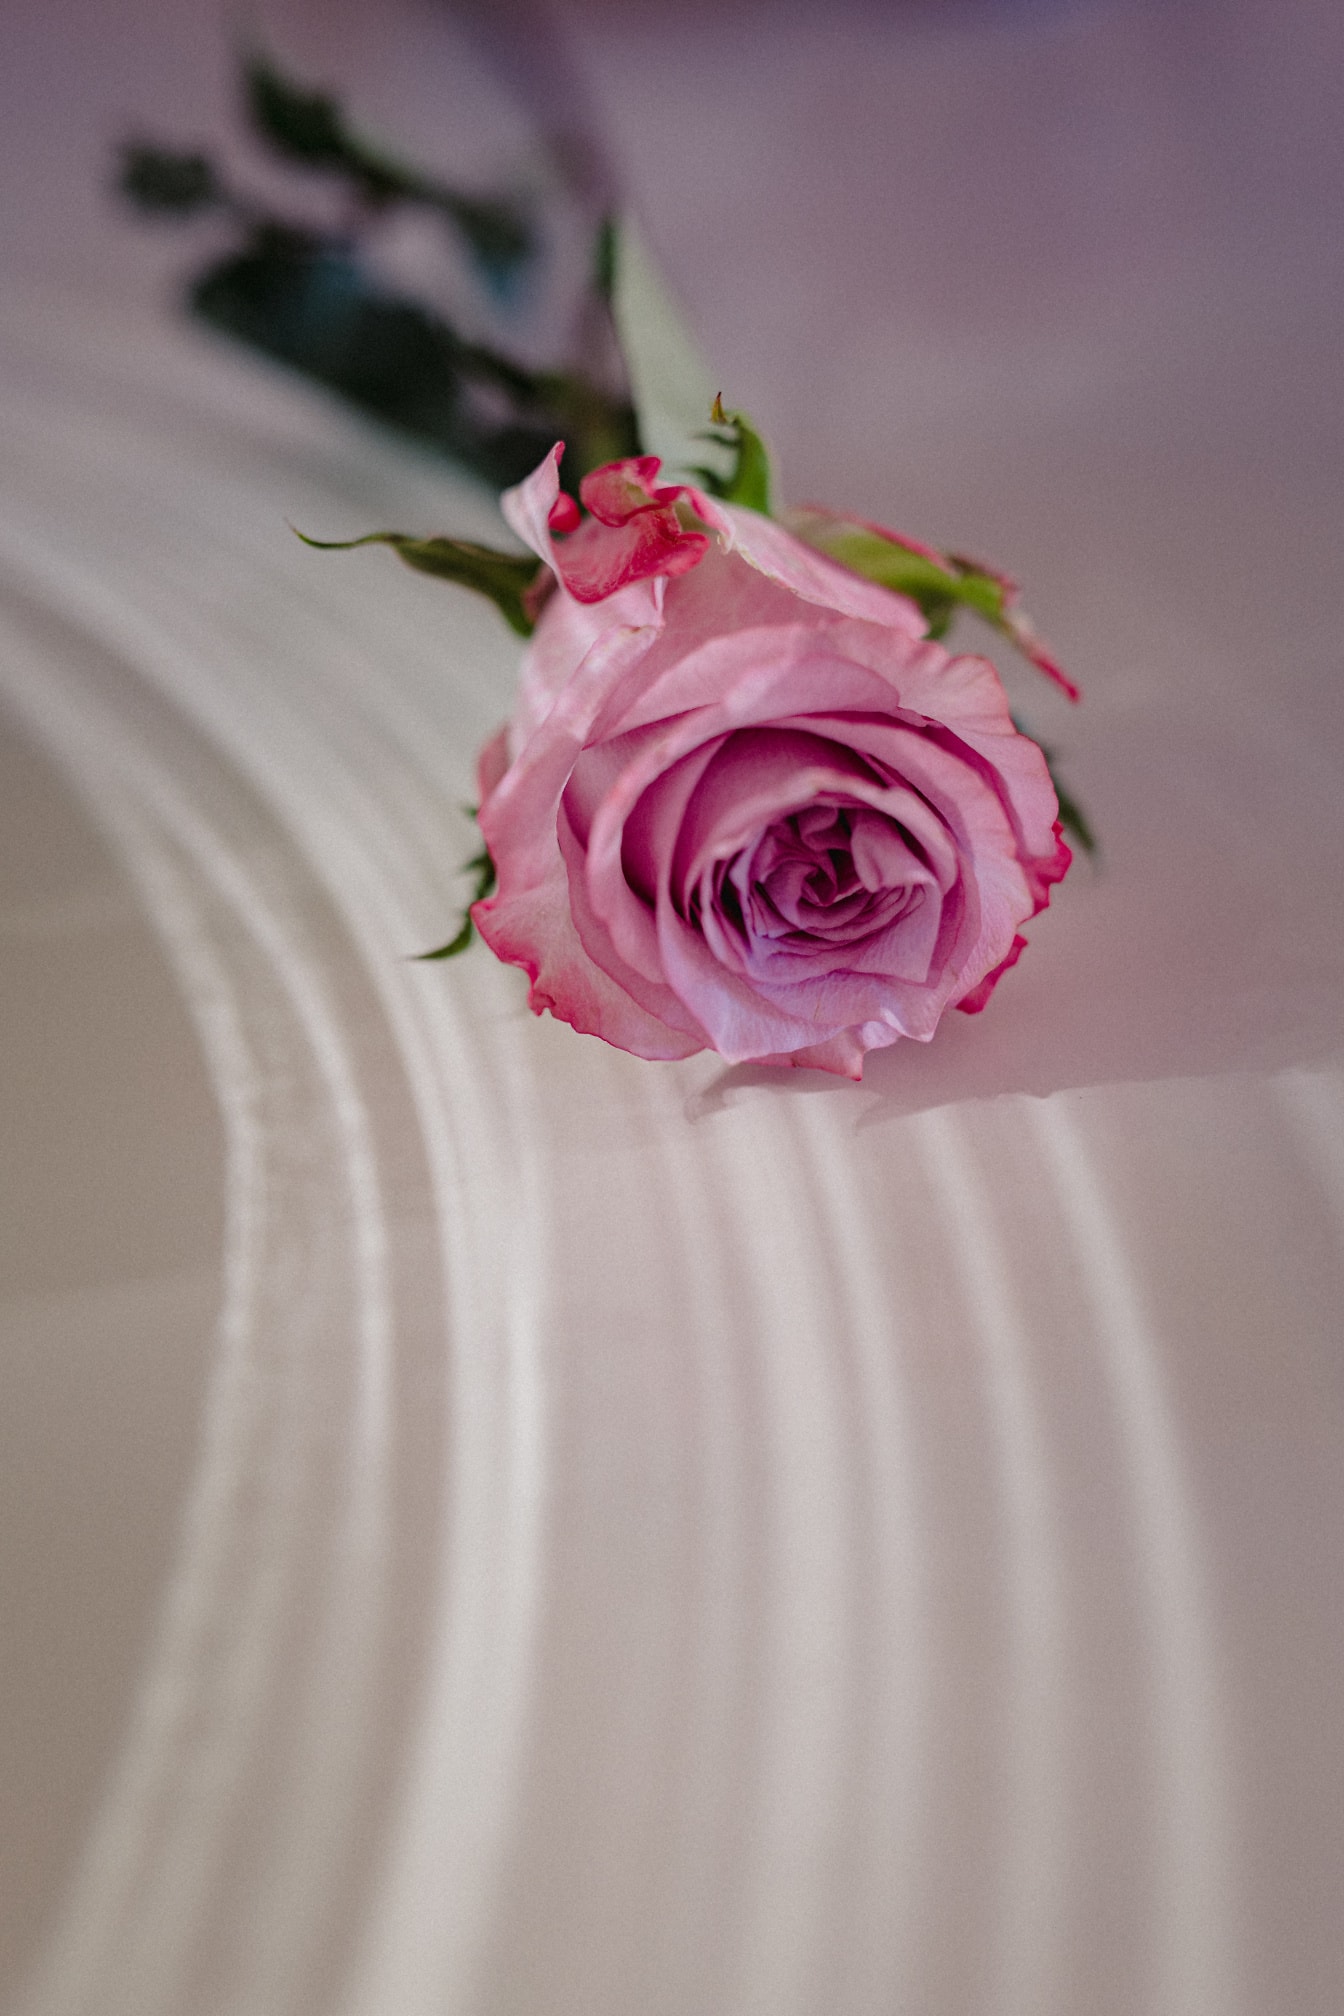 Regalo rosa rosa per San Valentino su una superficie bianca